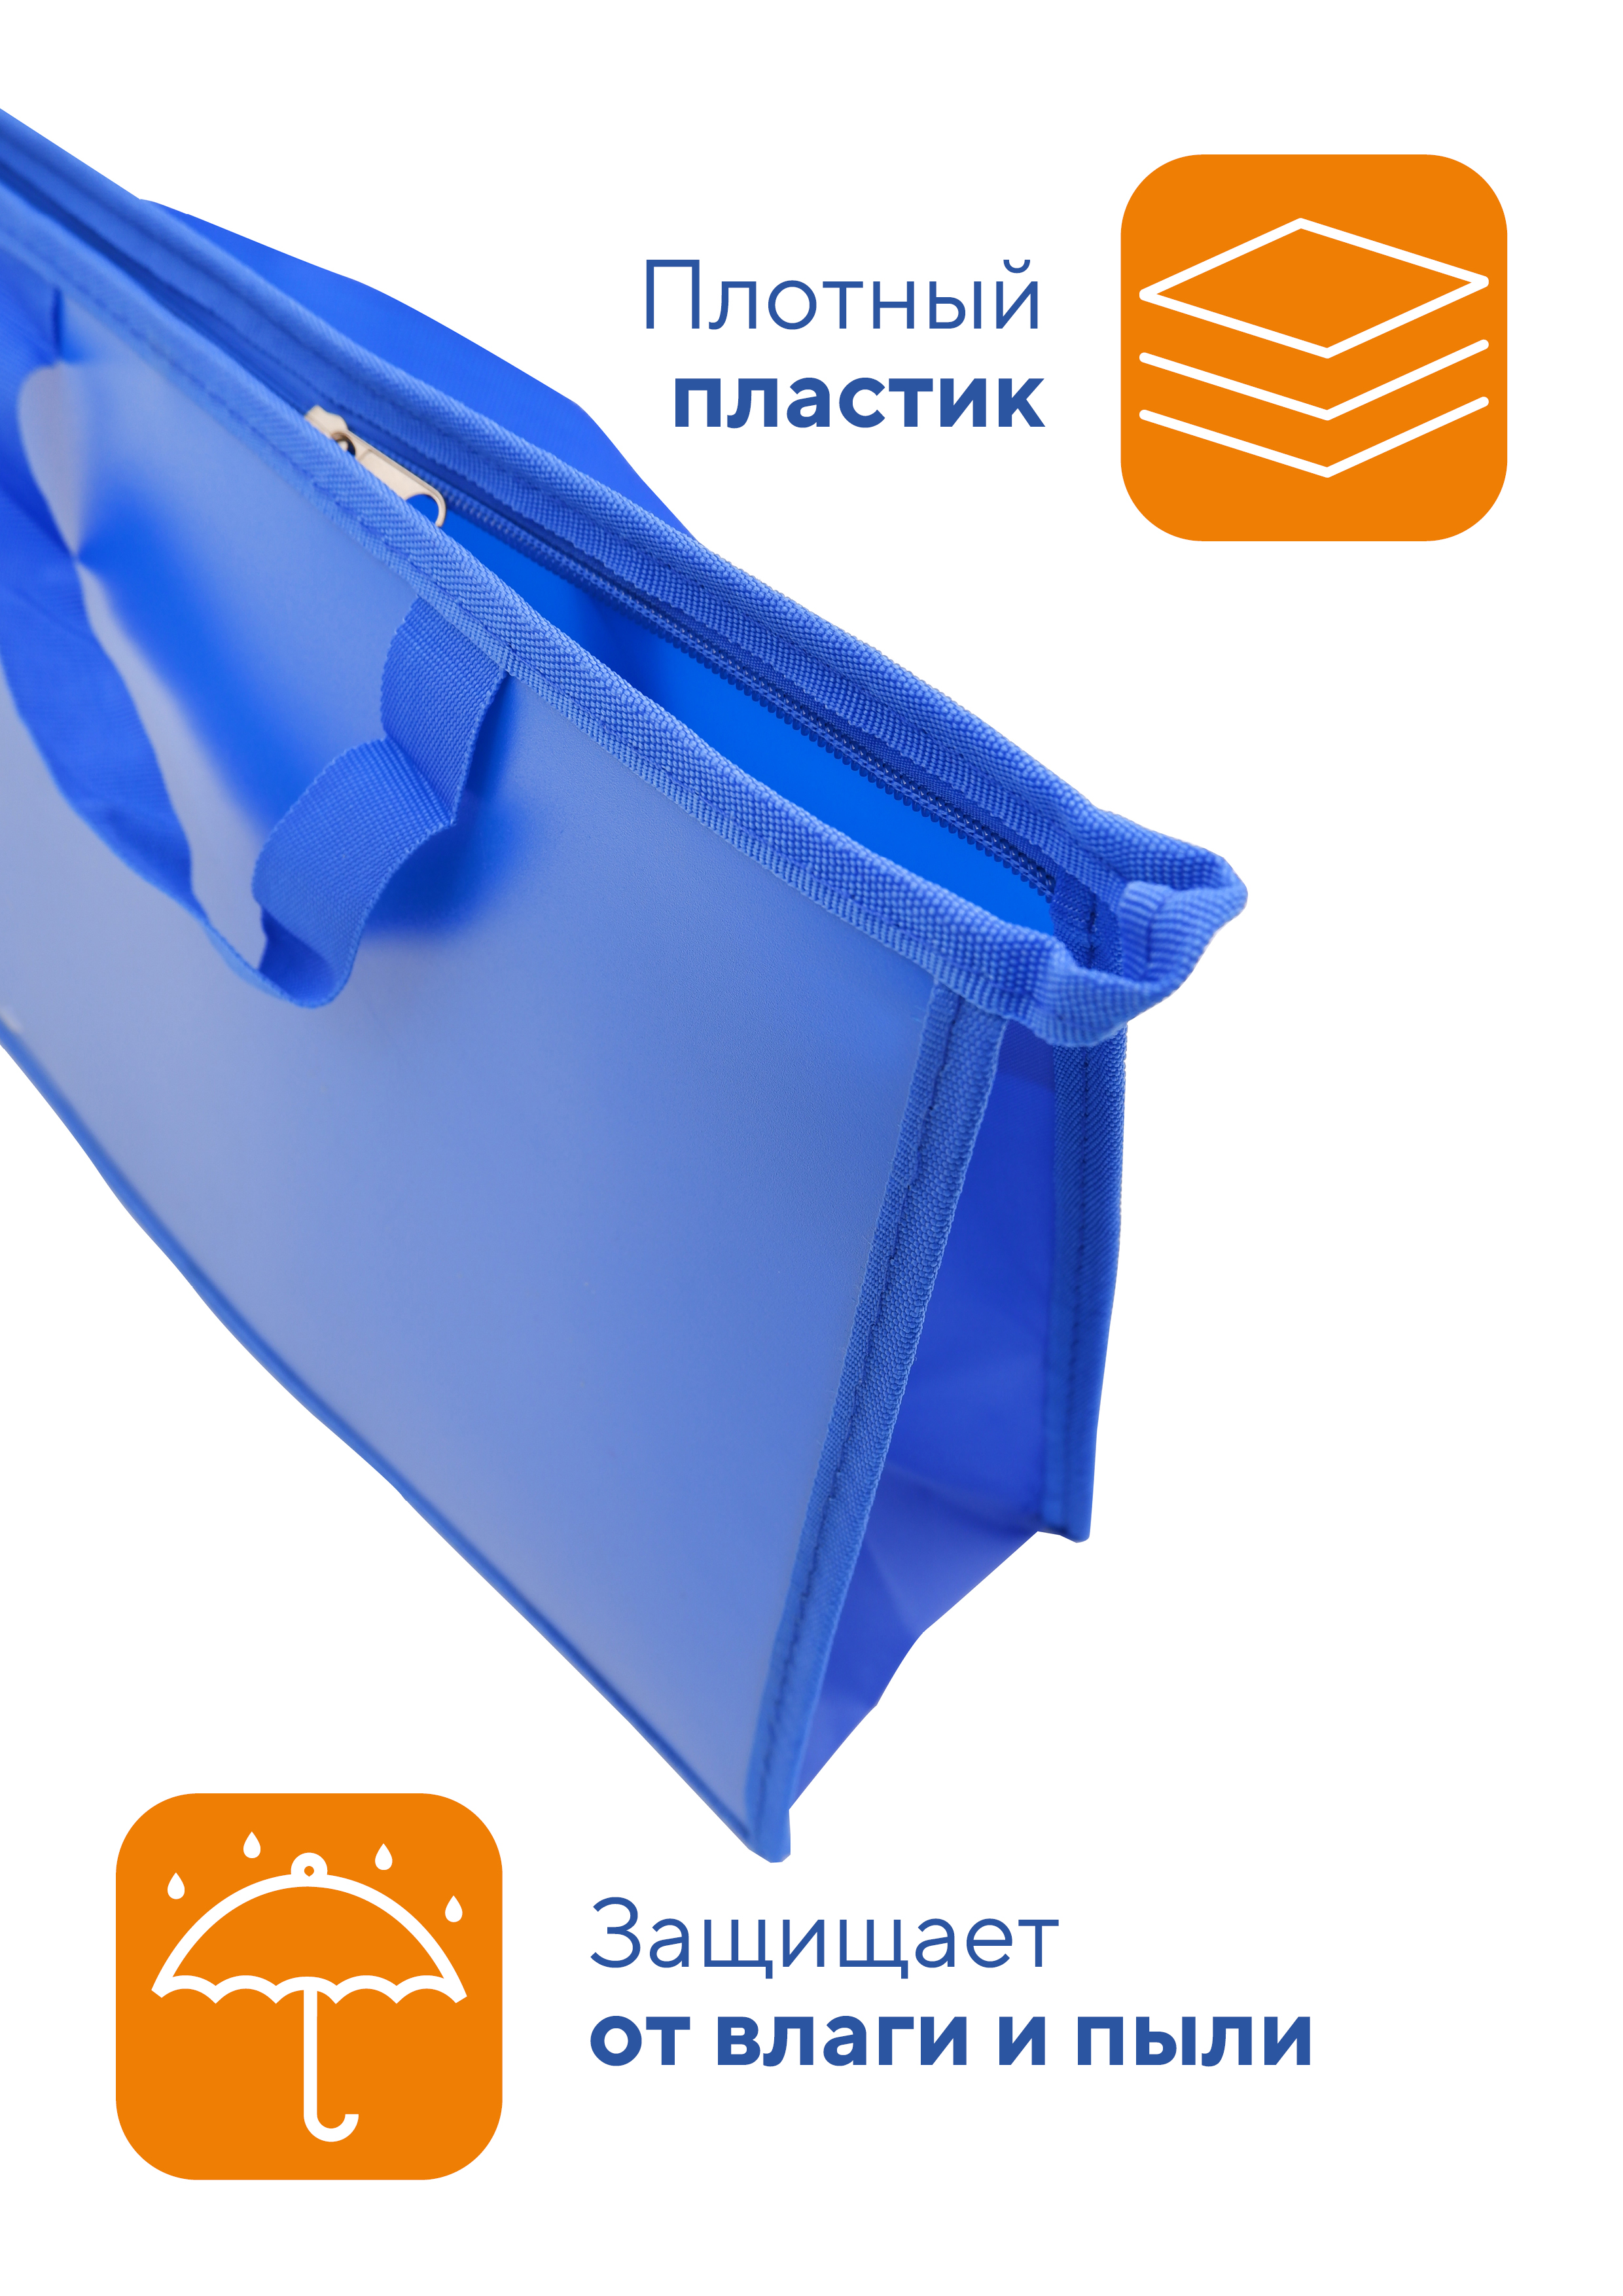 Папка для труда WORKMATE А4 с ручками пластиковая синий василек не прозрачная 33х23х10 см - фото 2